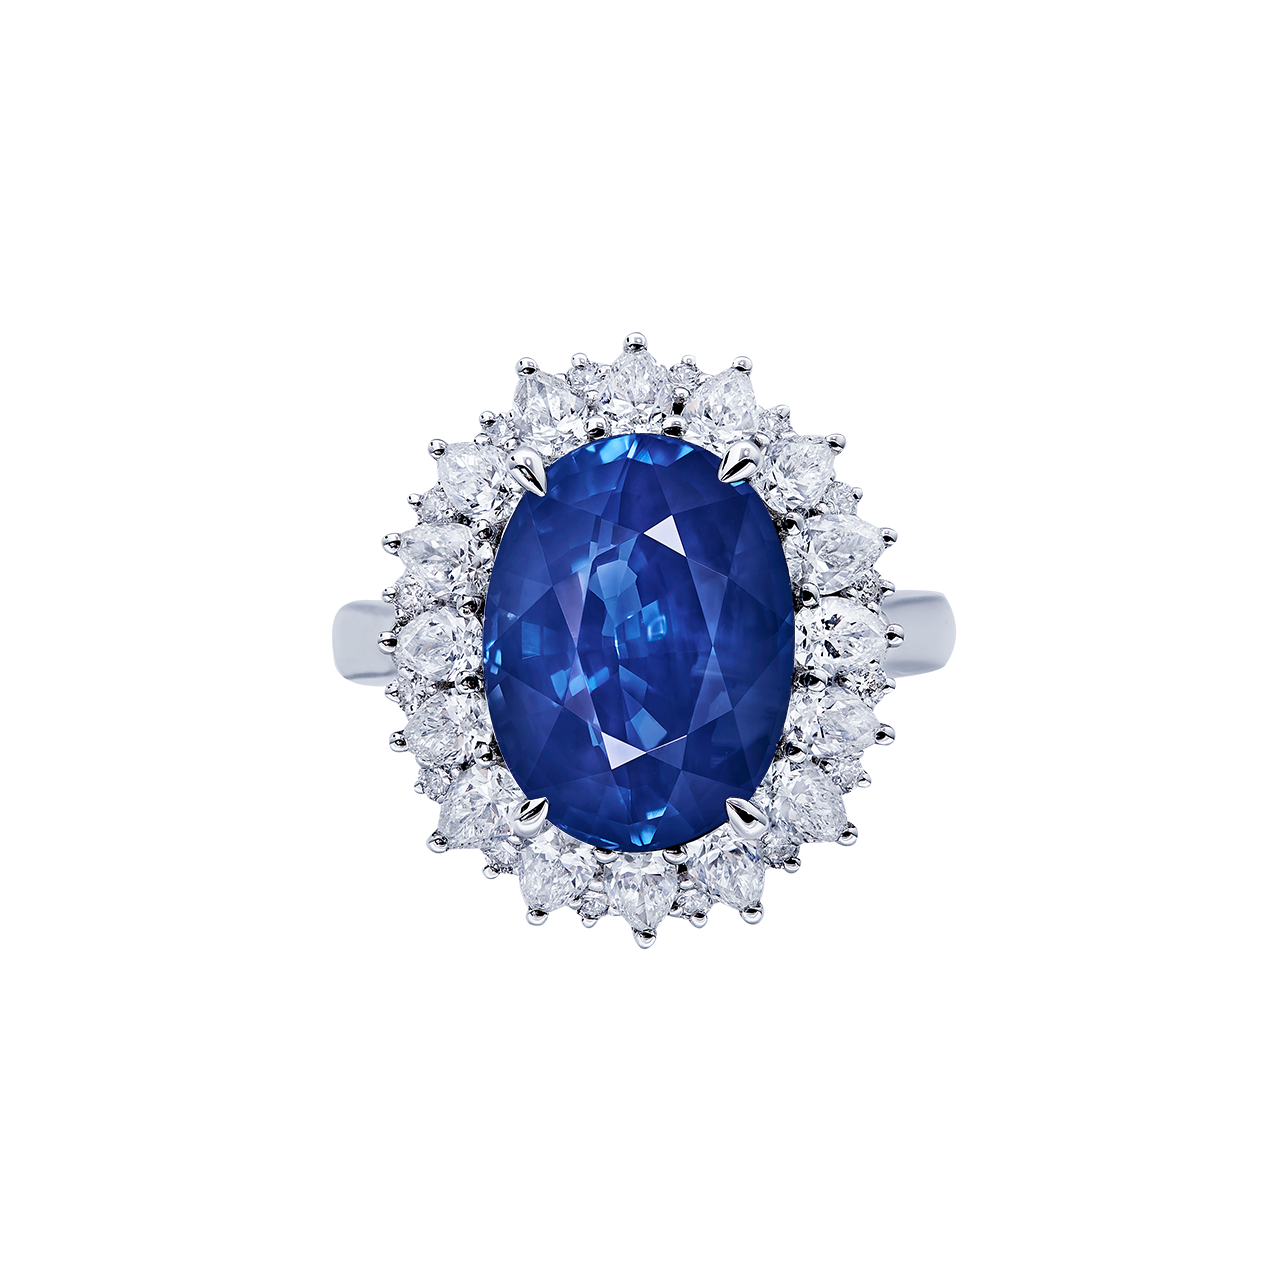 11.12克拉 斯里蘭卡天然無燒皇家藍藍寶石鑽戒
SRI LANKA ROYAL BLUE SAPPHIRE 
AND DIAMOND RING